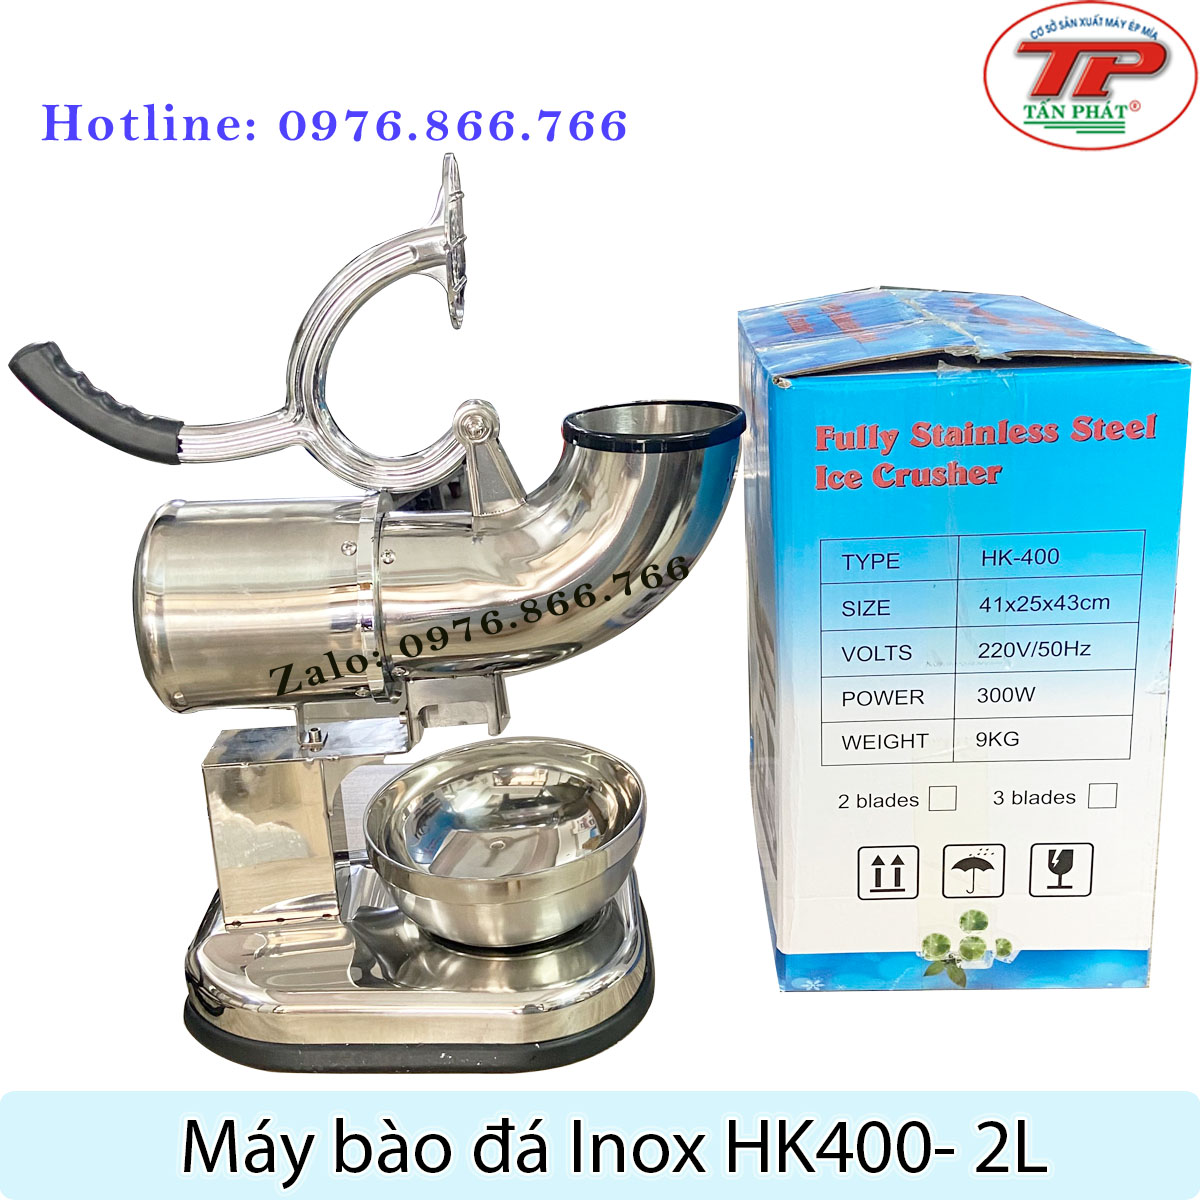 máy bào đá inox HK400 chất lượng cao giá rẻ Tấn Phát 